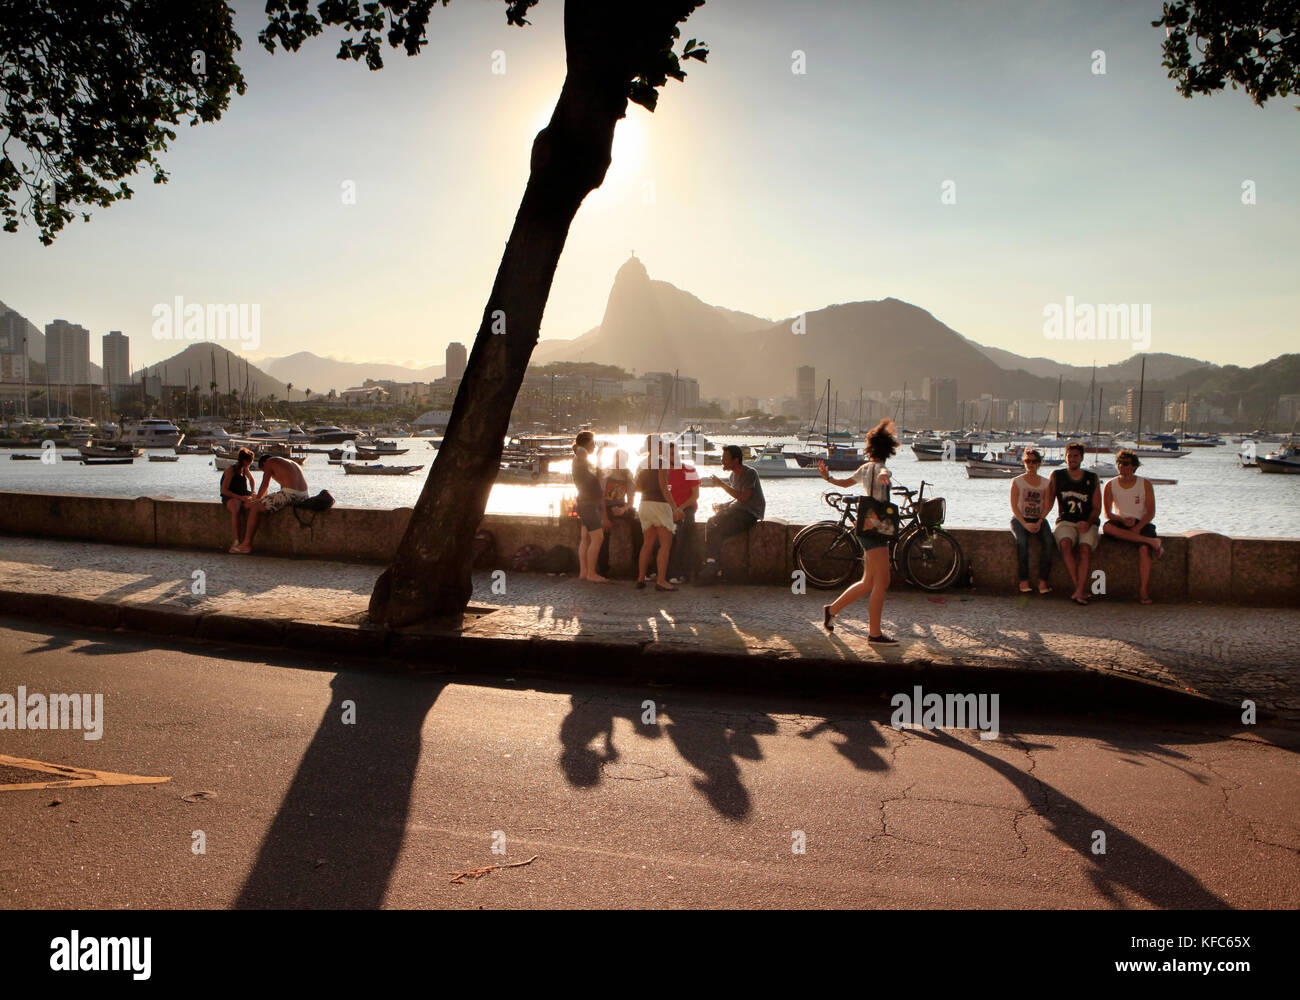 Brésil, Rio de Janeiro, bar urca, les gens s'asseoir sur un mur de la mer sur l'océan Atlantique Banque D'Images